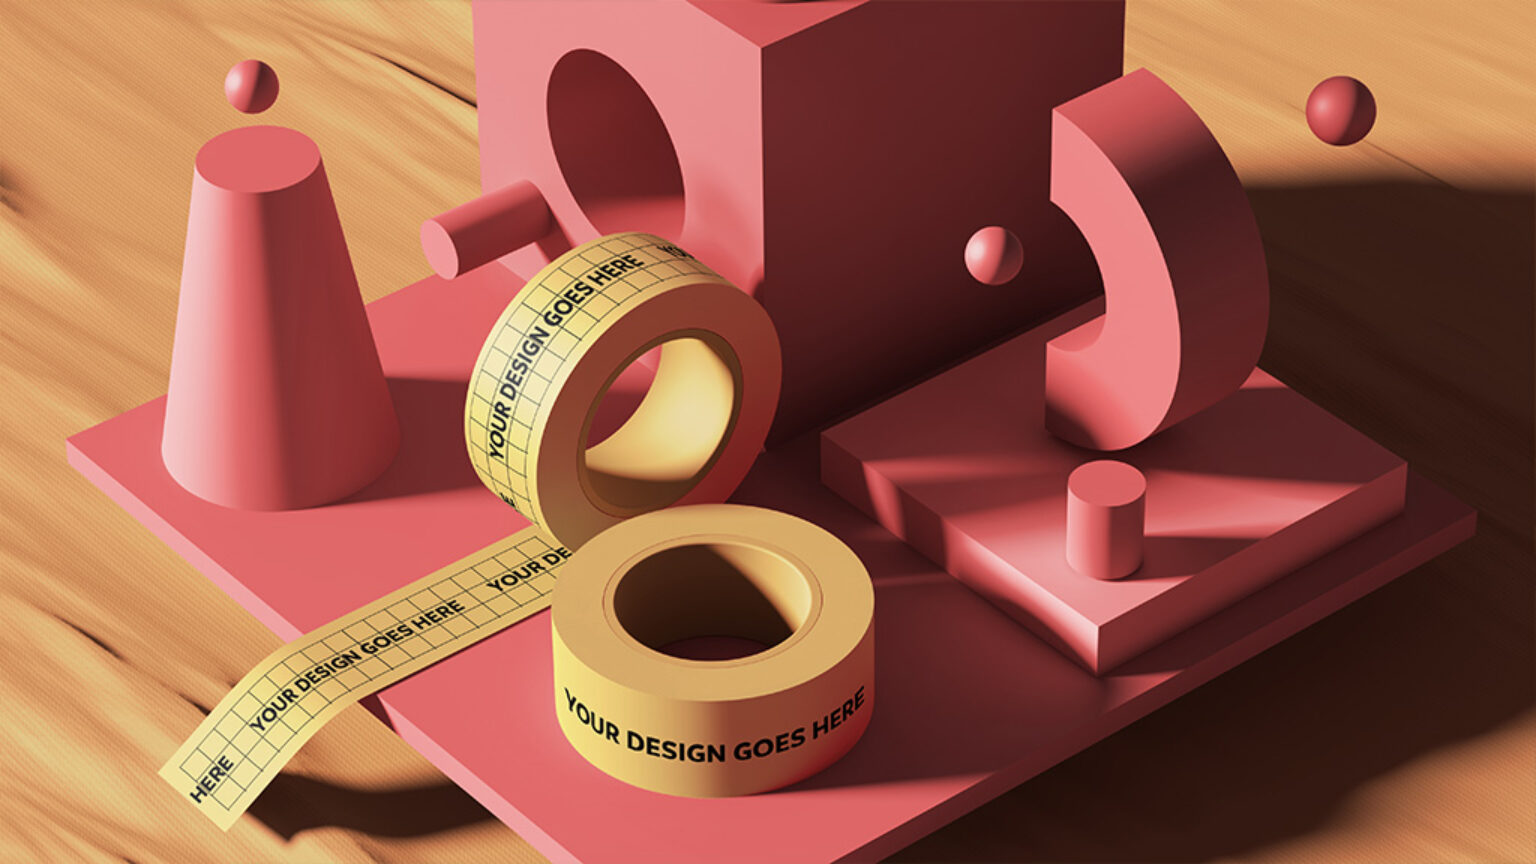 Download Adobe's 3D Items Mockup Bundle | Mockup World